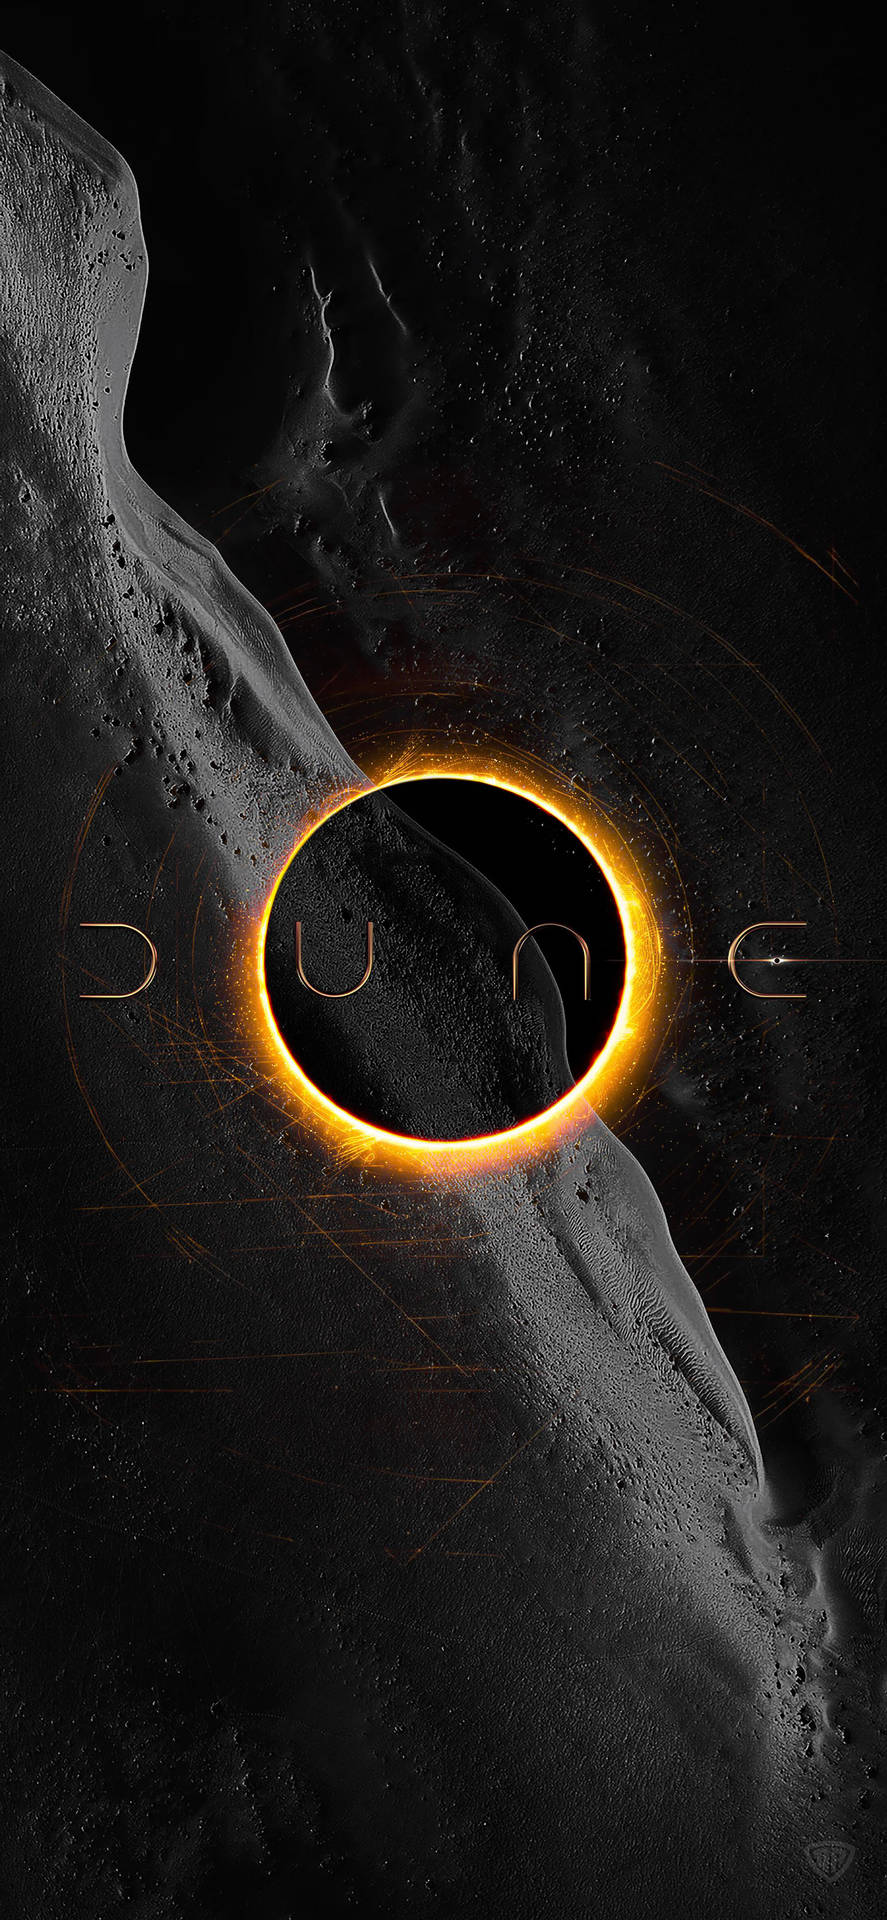 Dune2021 Filmen Eclipse-poster Wallpaper